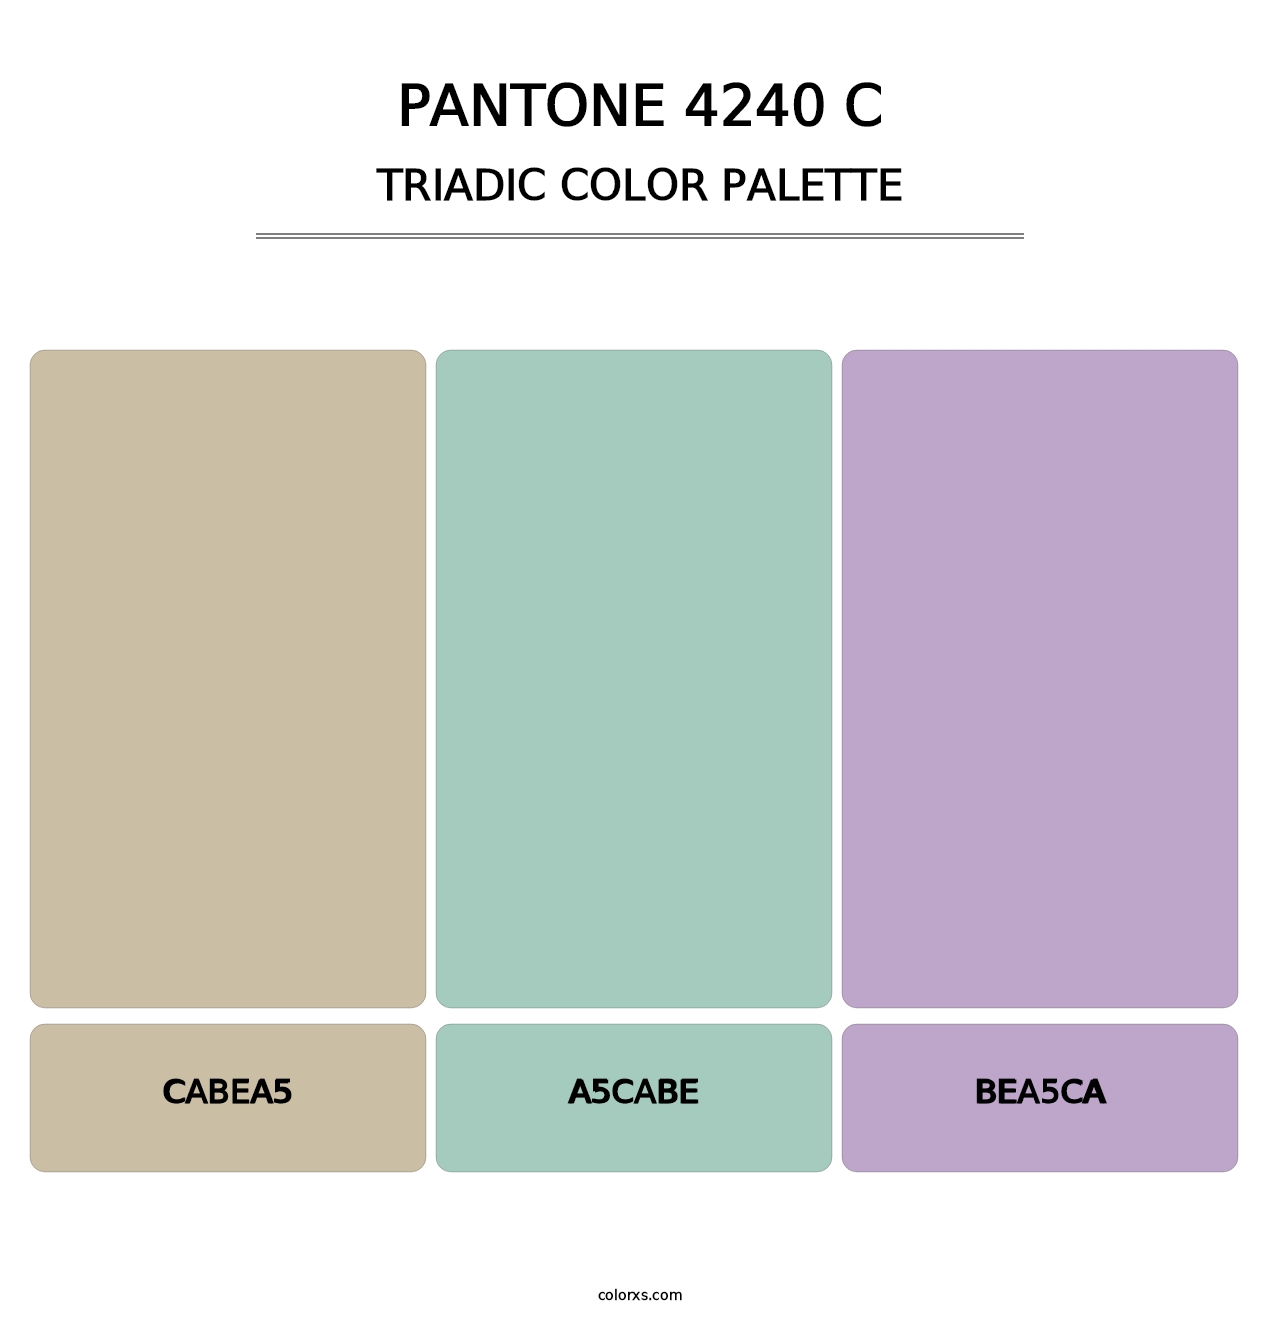 PANTONE 4240 C - Triadic Color Palette